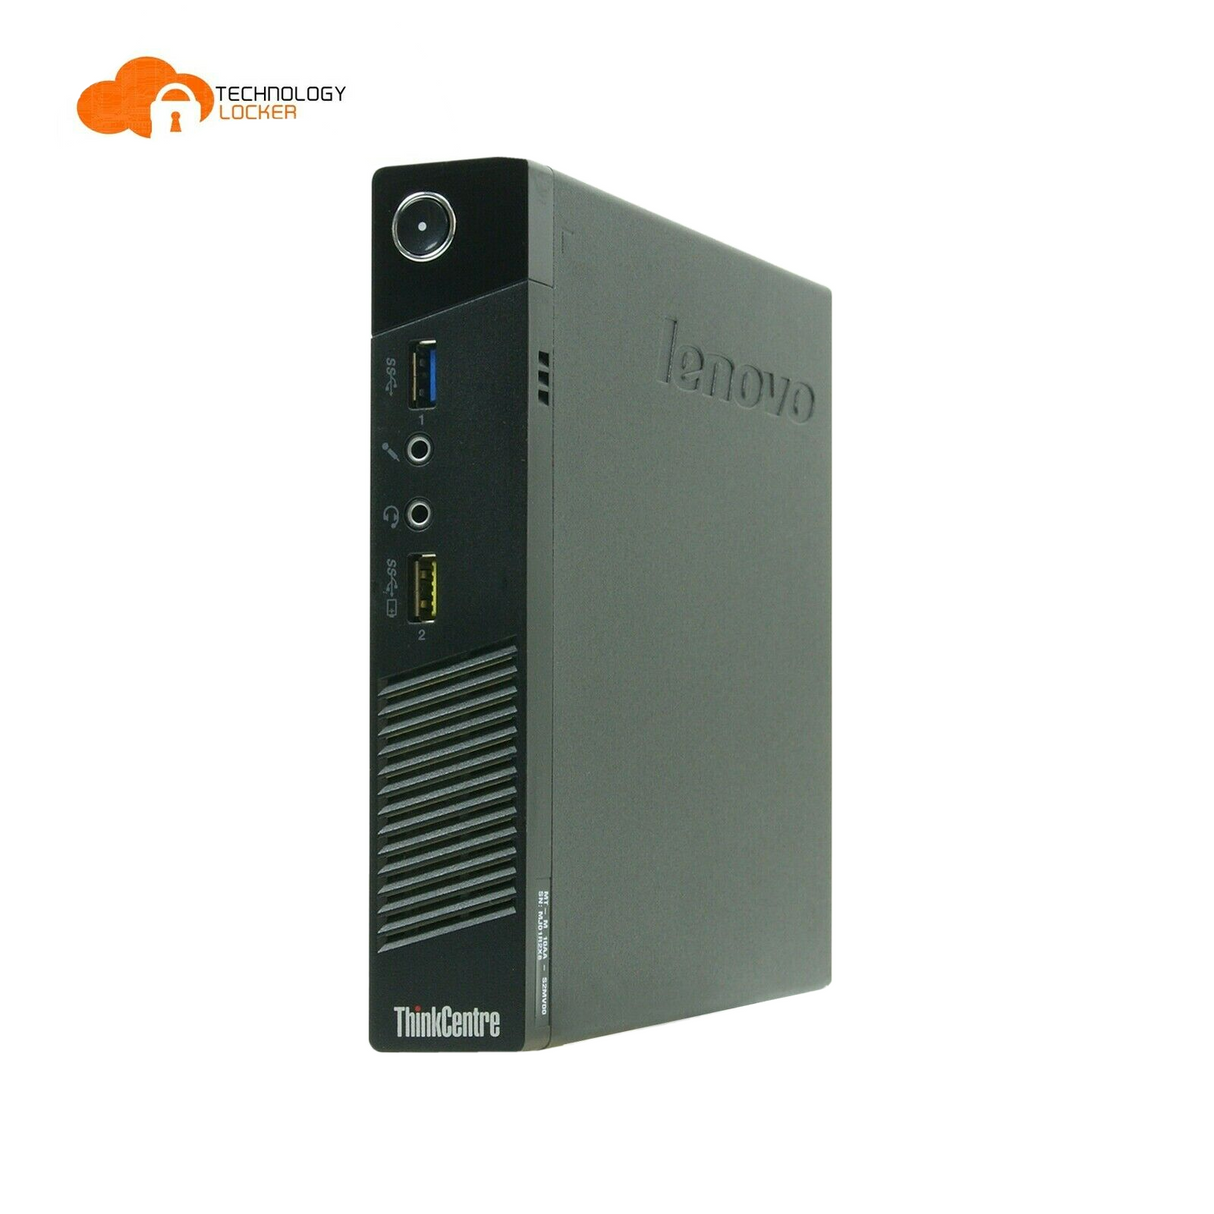 Lenovo ThinkCentre M93p Tiny PC i5-4570T @2.9 8GB RAM 120GB SSD DVD-RW W10P